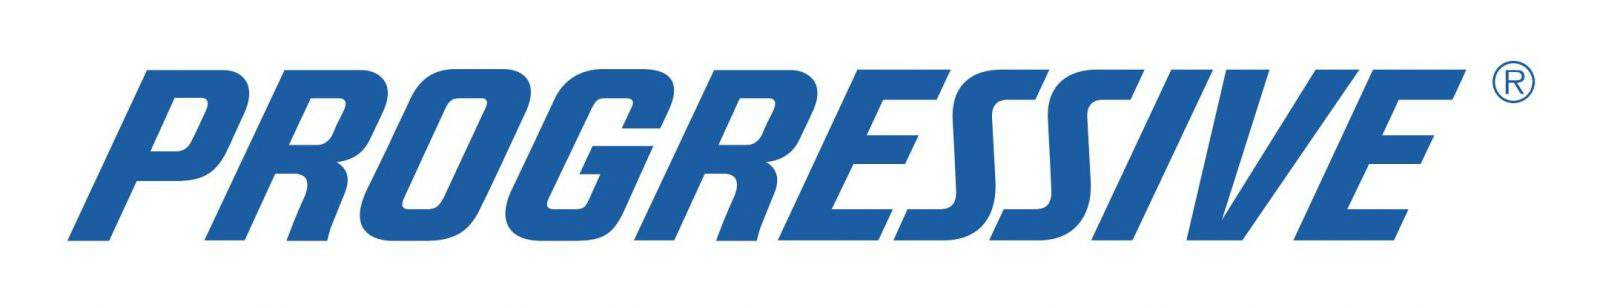 progressive Company logo